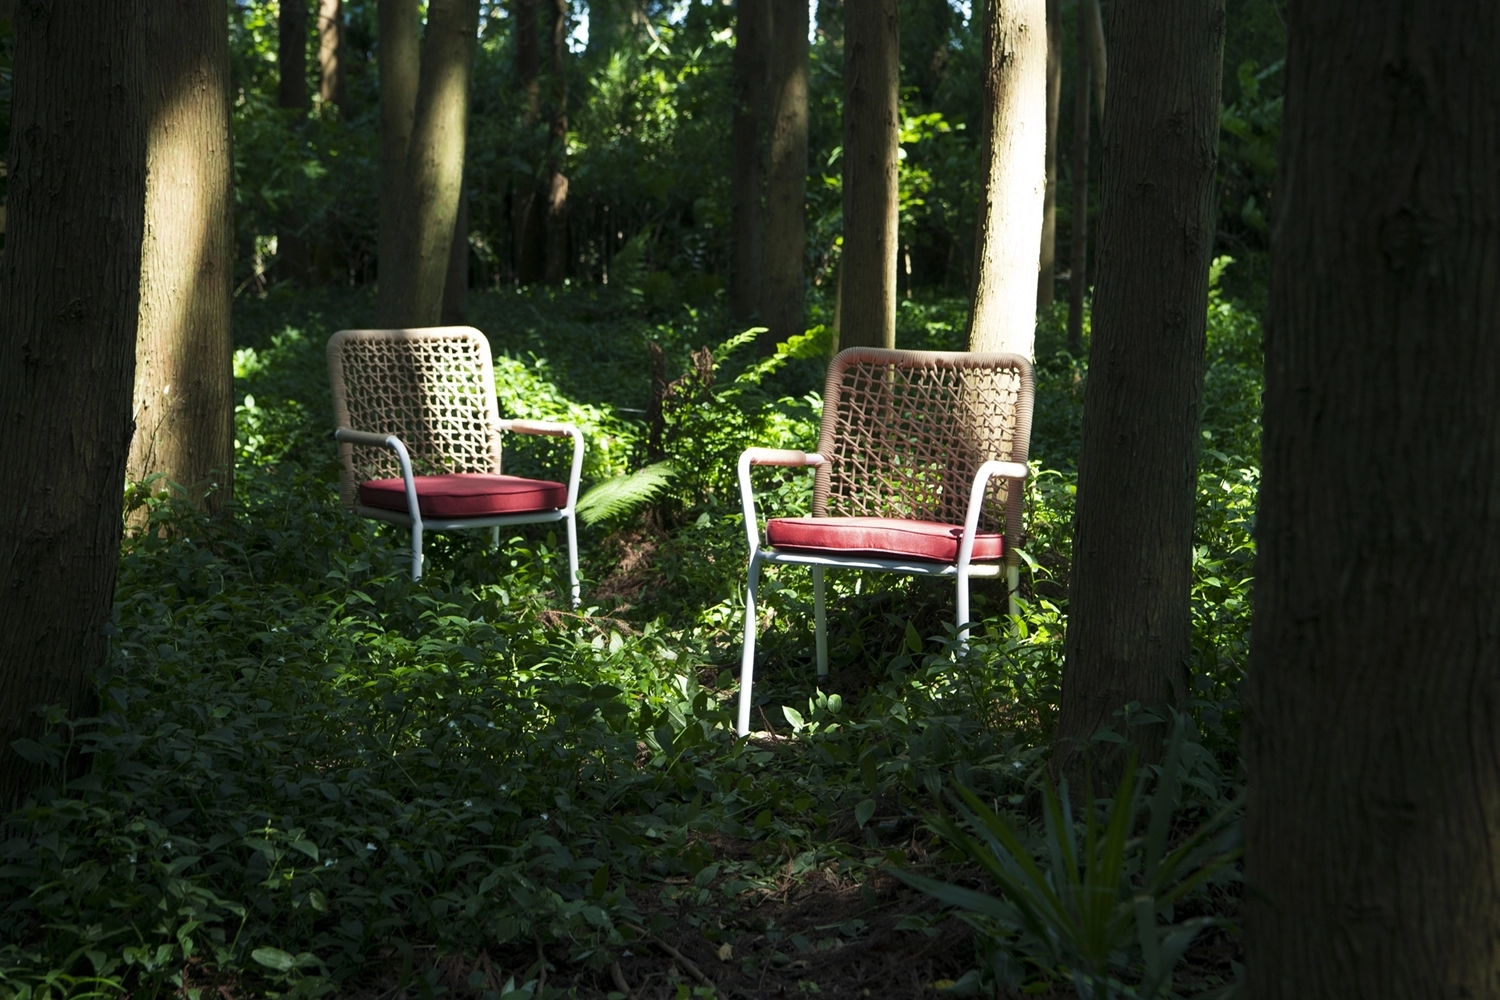 CW57 ガーデンチェア / Garden Chair